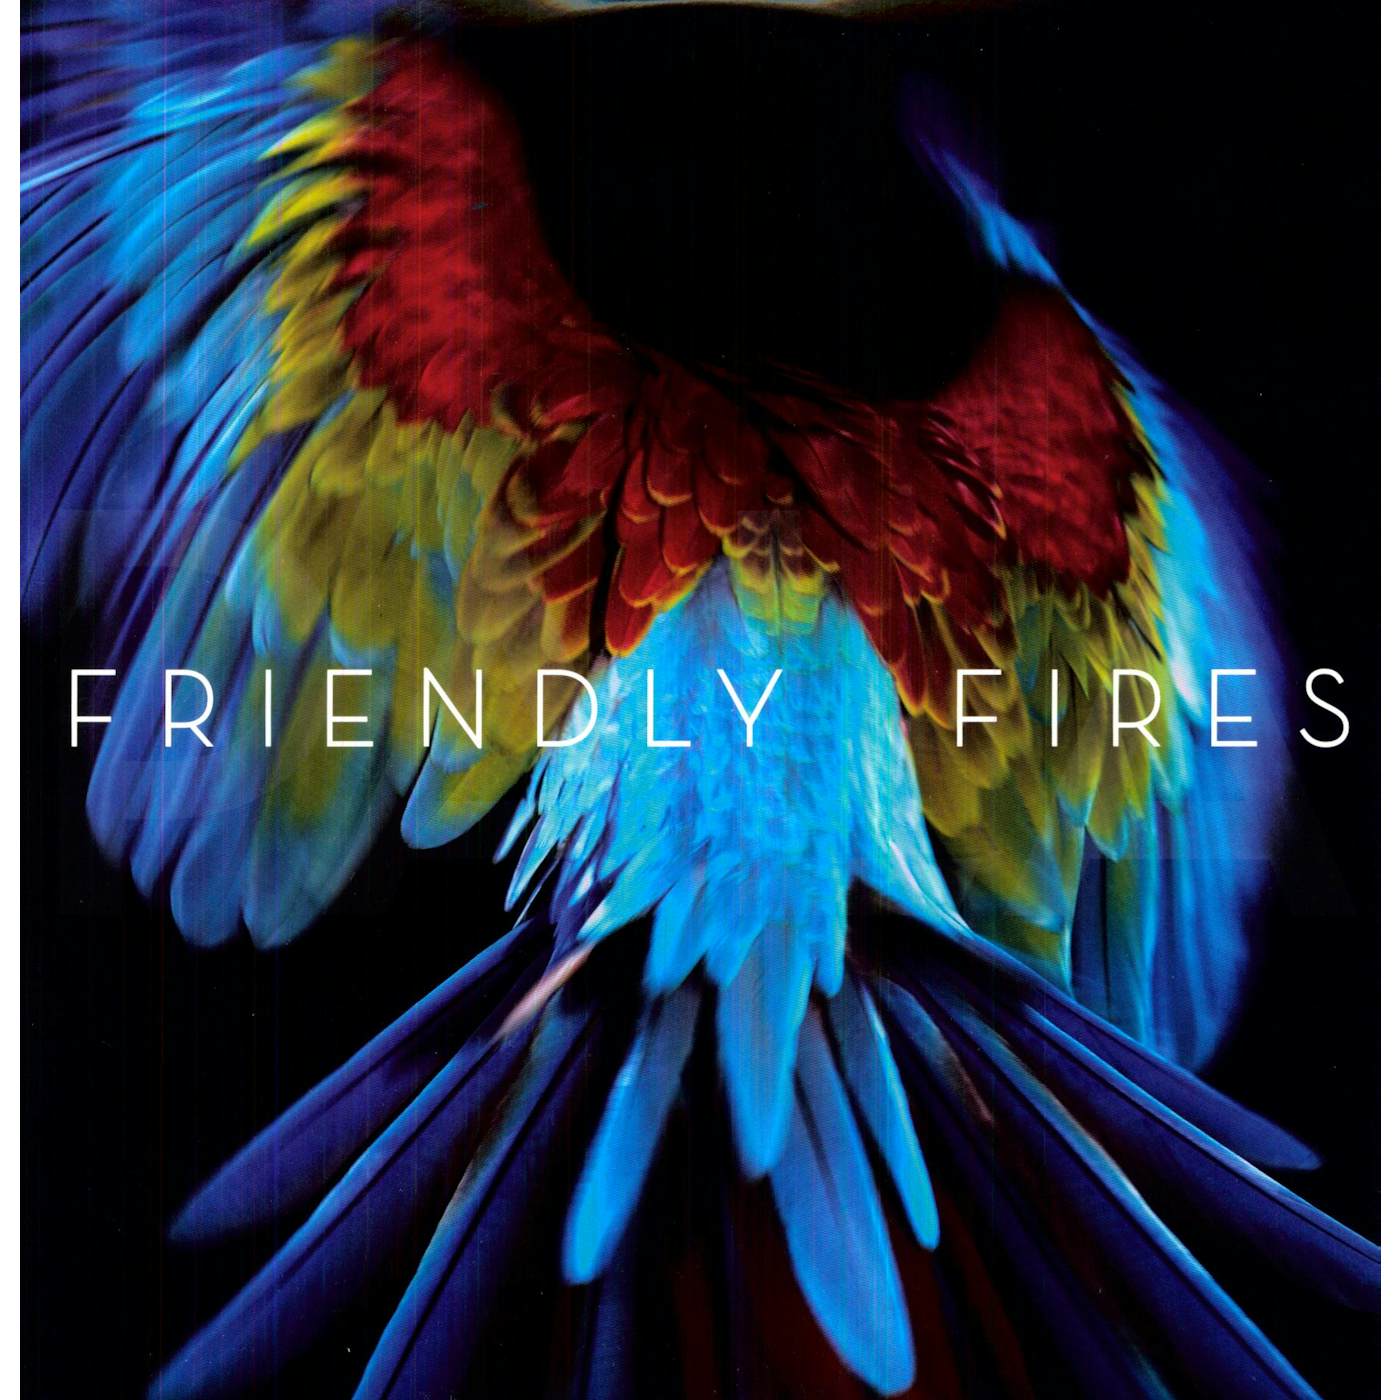 Friendly Fires Pala Vinyl Record